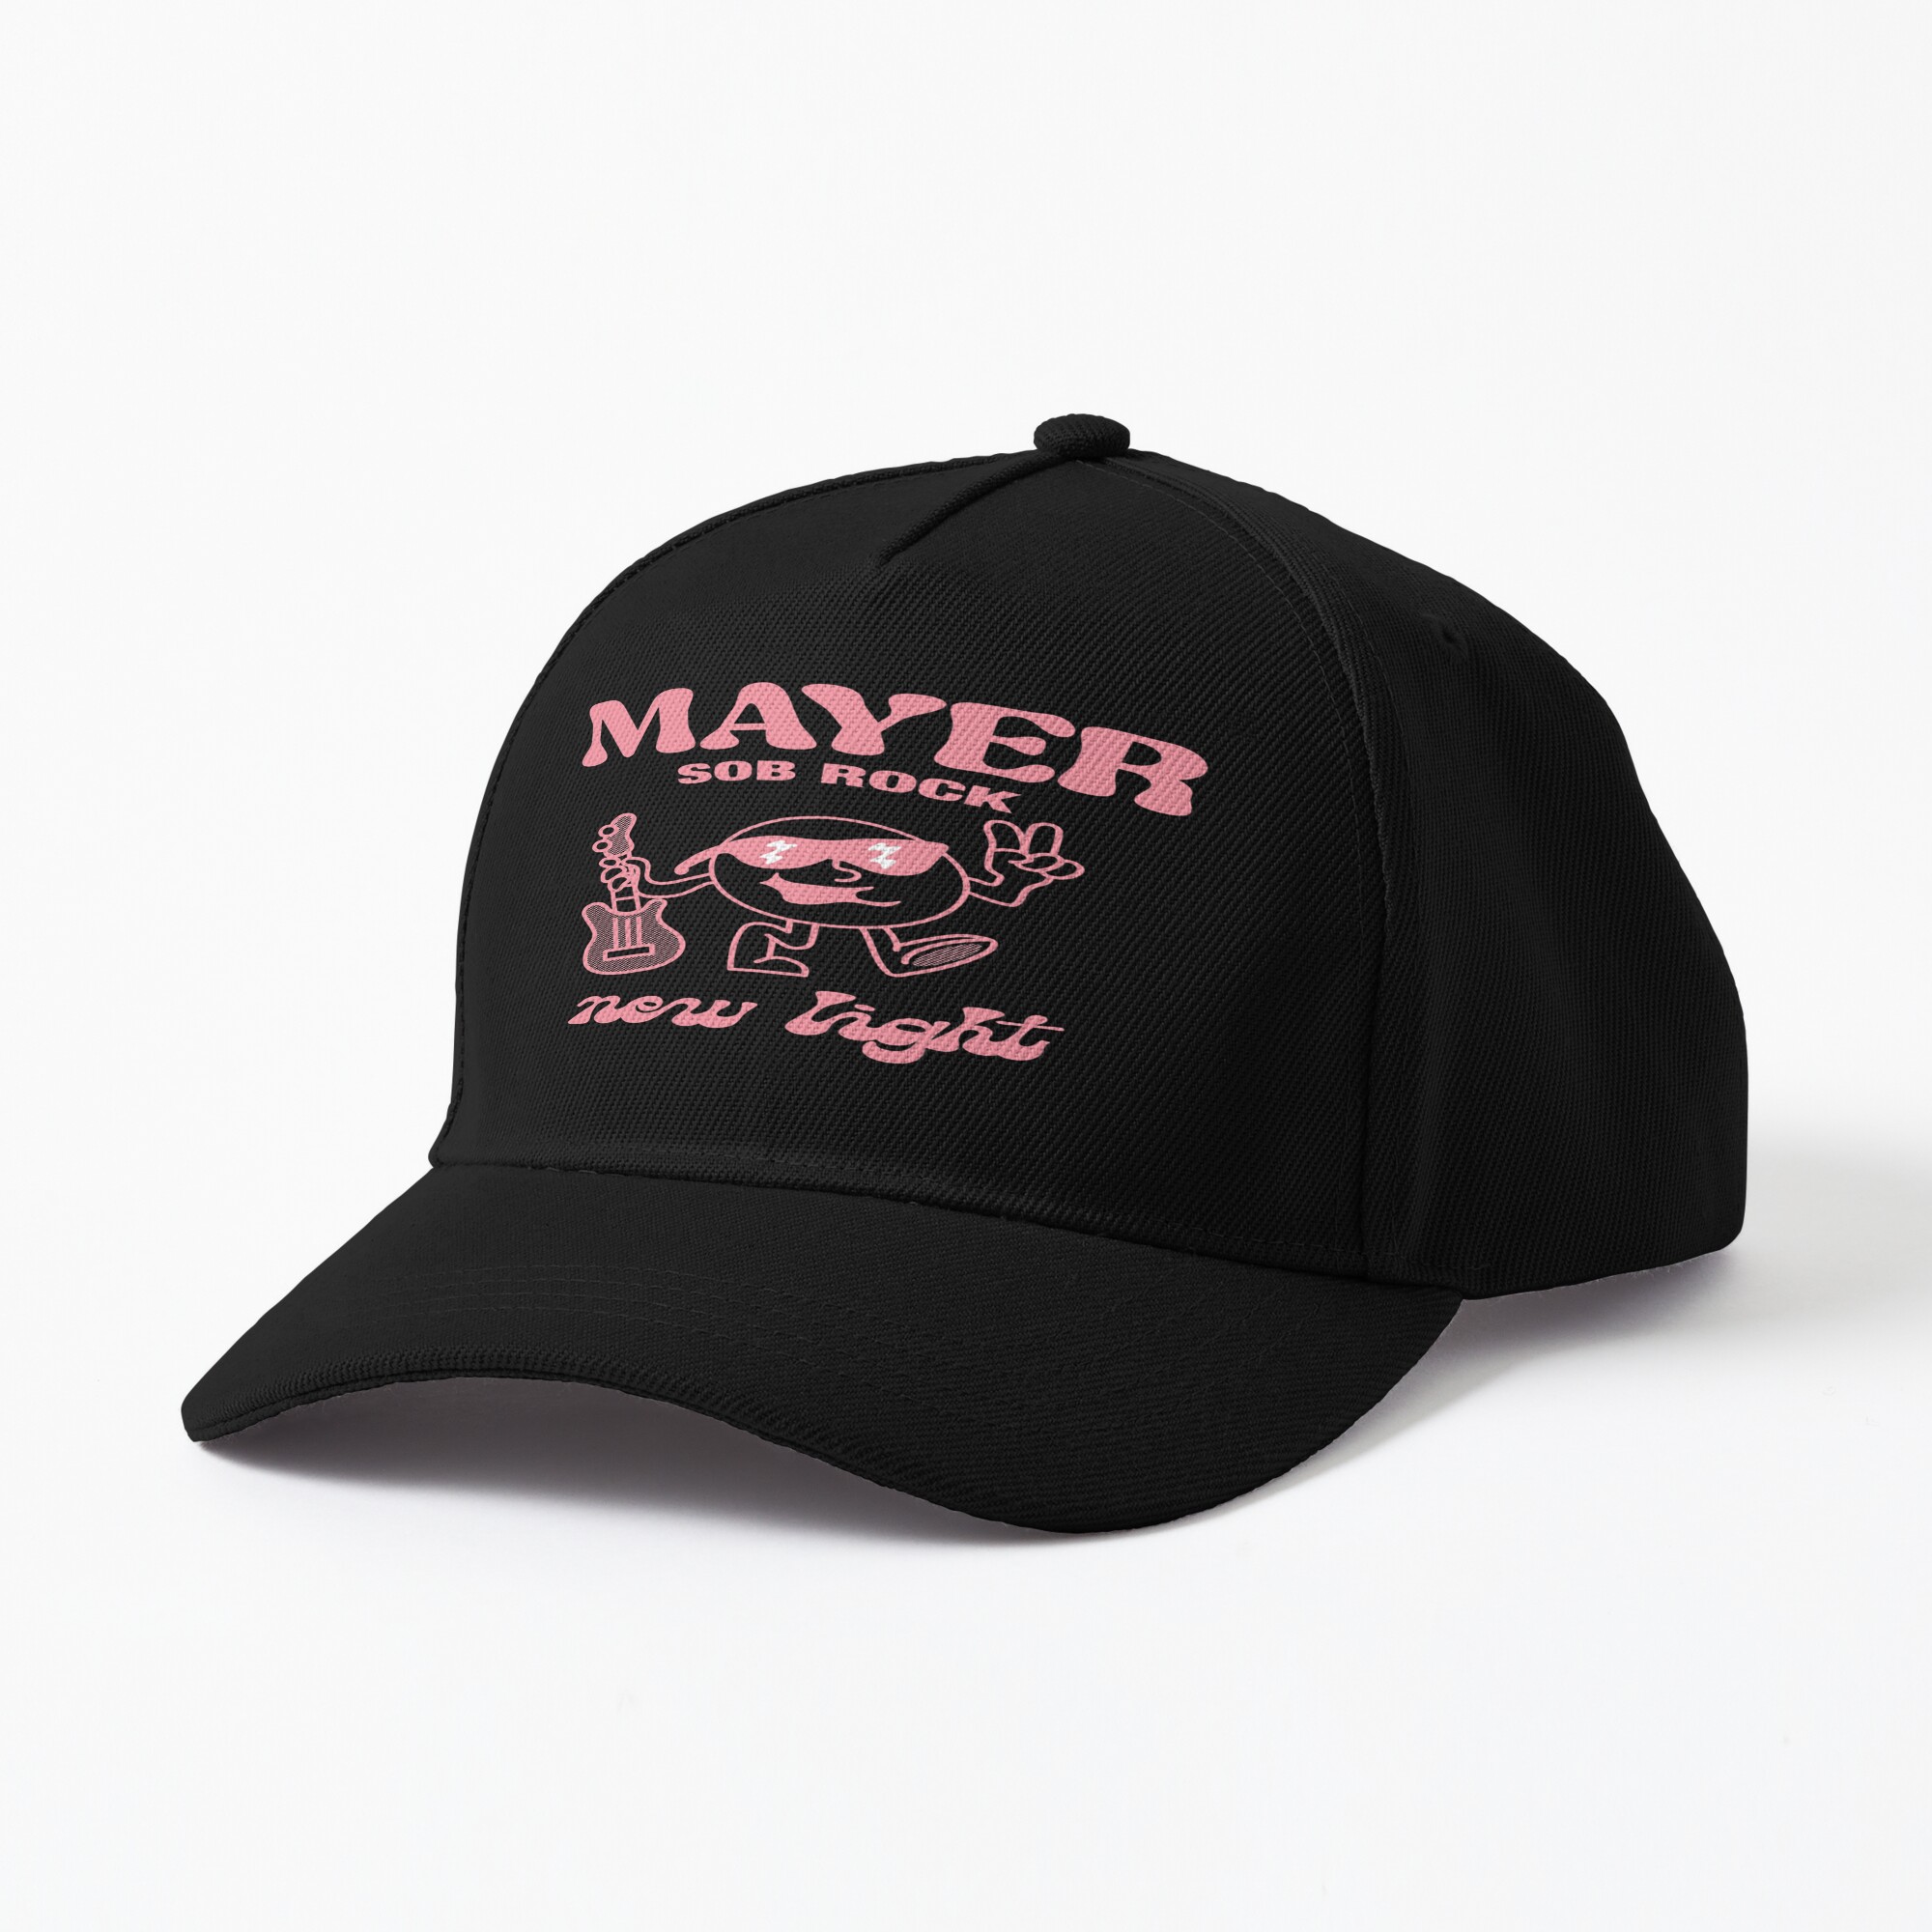 John Mayer cap - Kanye West Shop